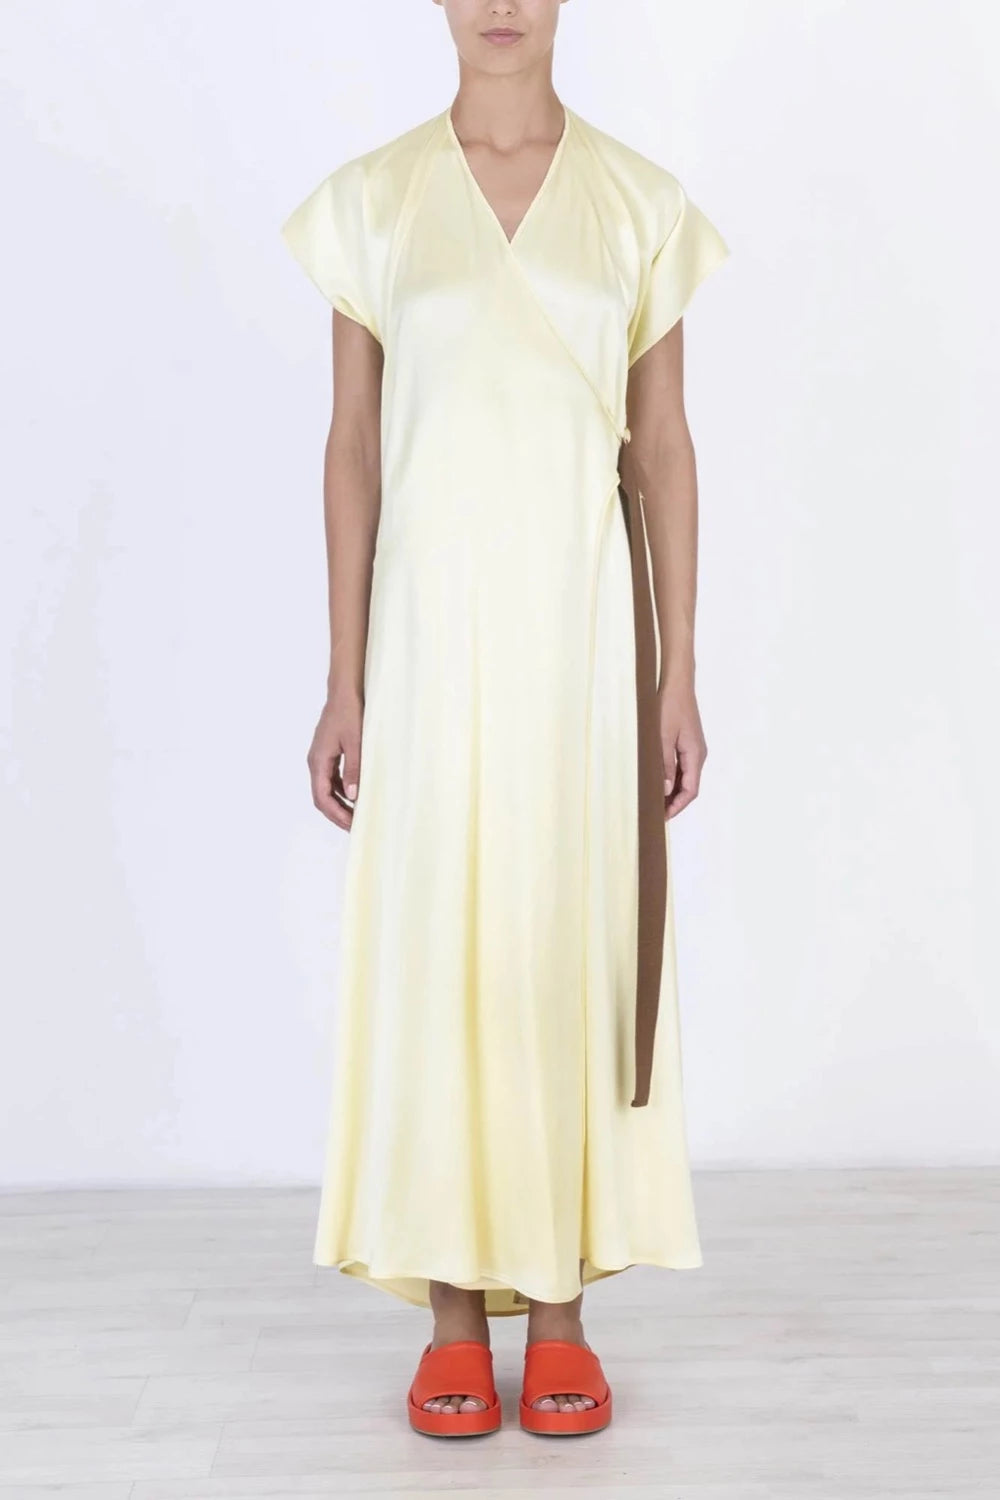 Alysi - Limo Dress: Limonata